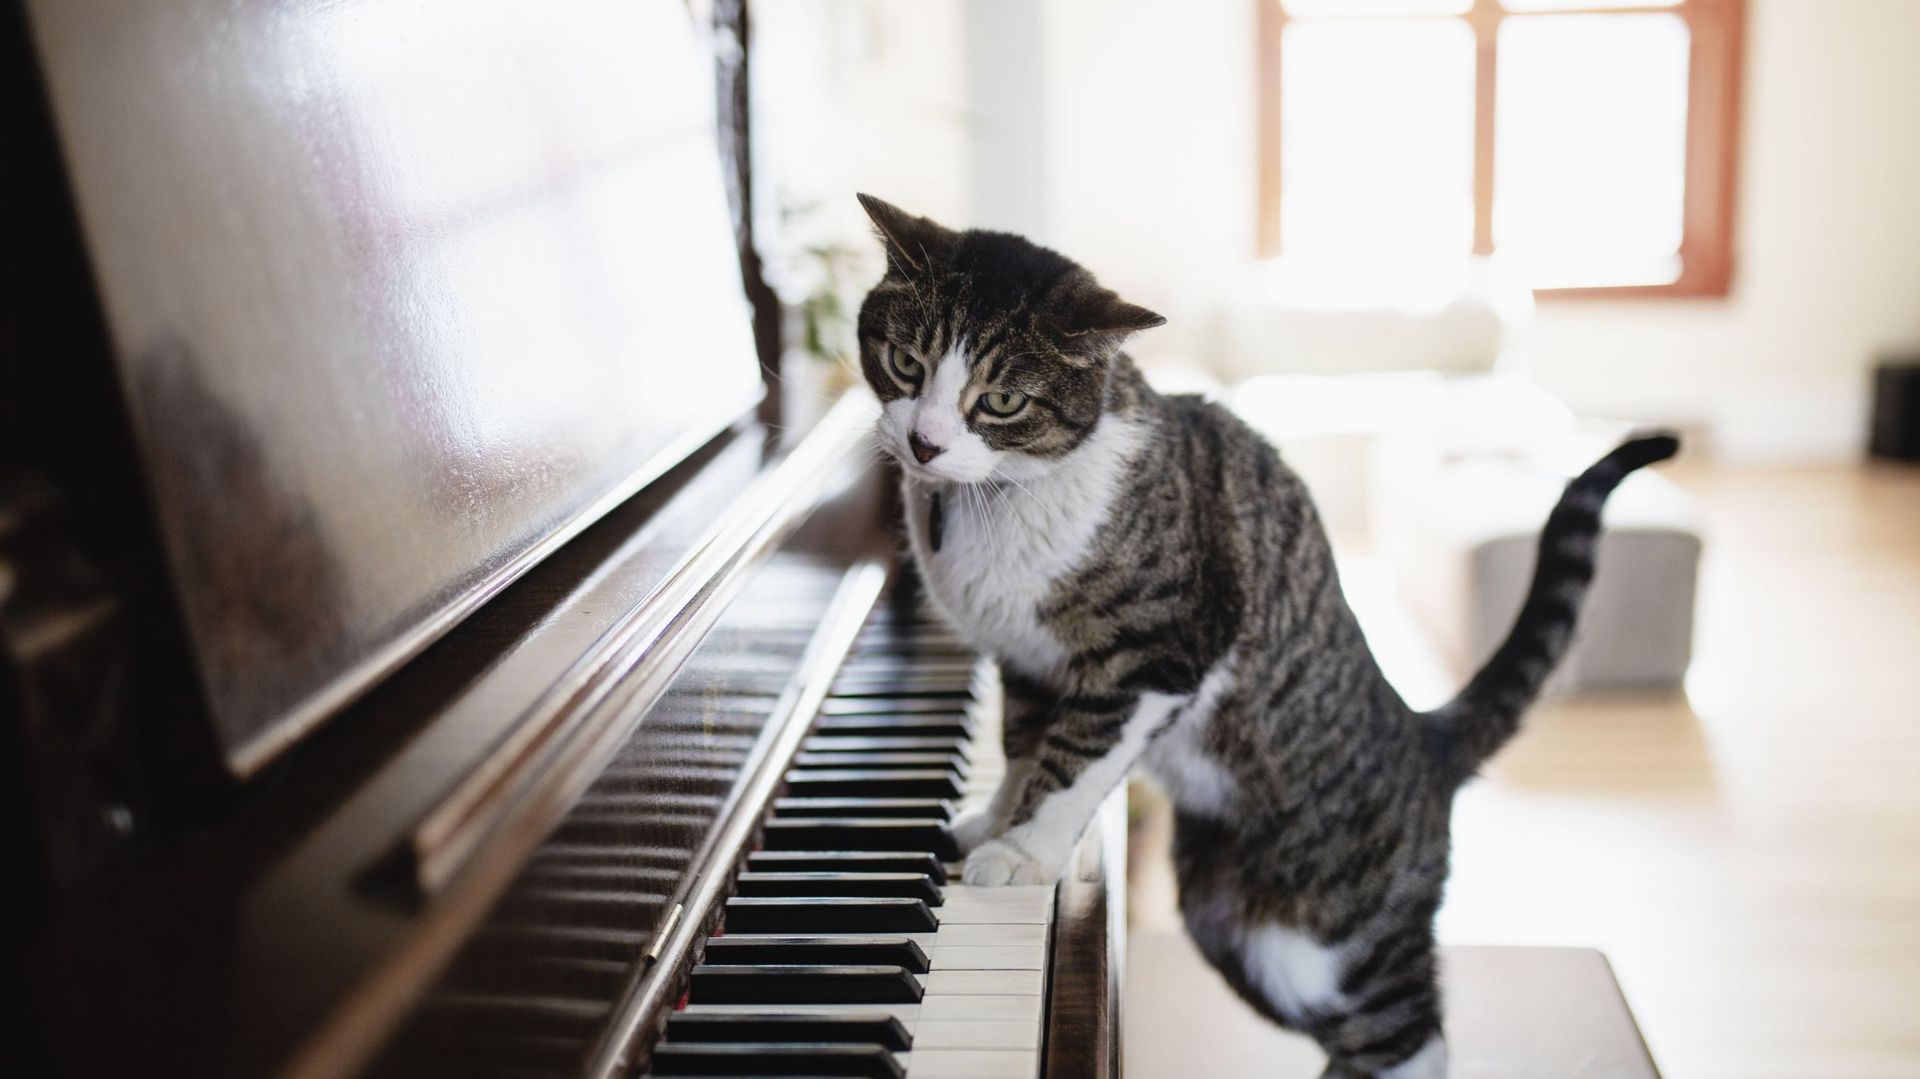 Tous les pianistes ne sont pas virtuoses et tous les voisins ne sont pas complaisants